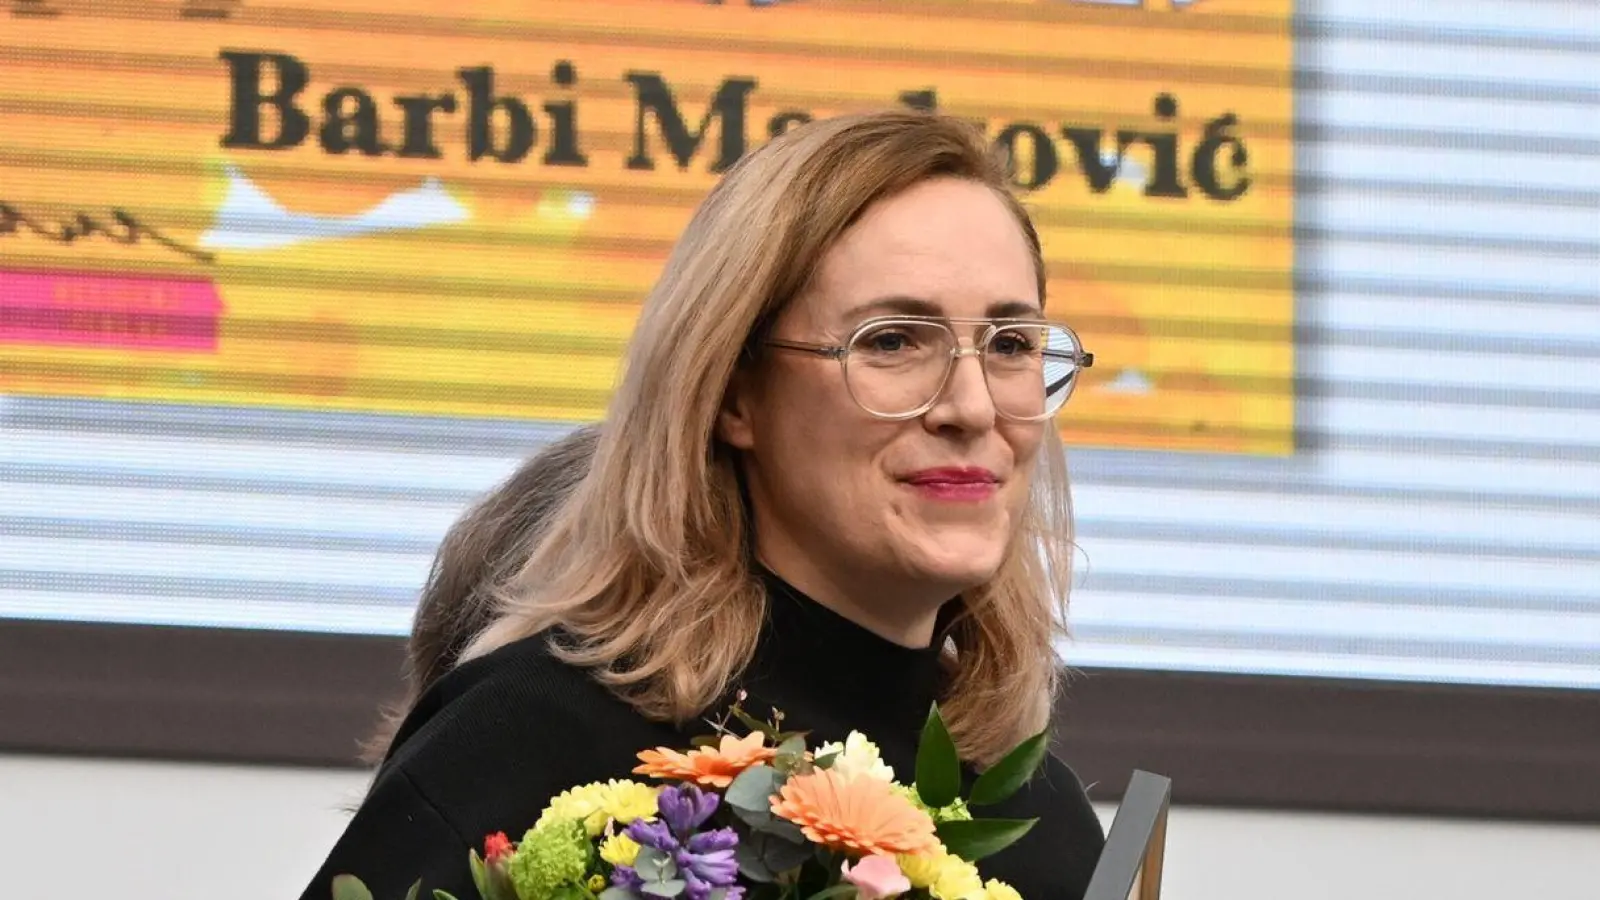 Barbi Marković wurde in Leipzig für ihr Buch „Minihorror“ ausgezeichnet. (Foto: Hendrik Schmidt/dpa)